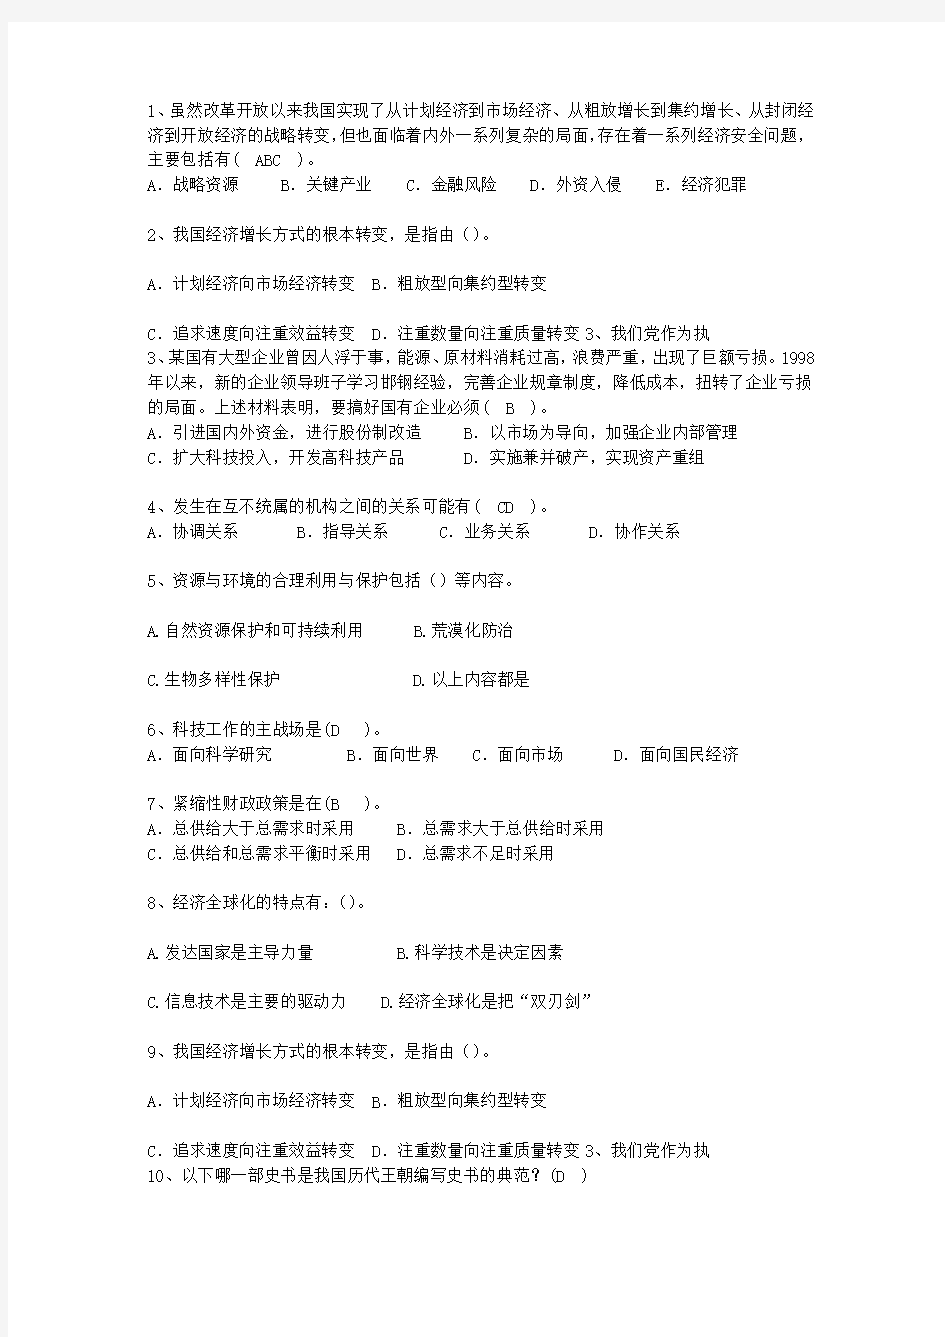 2015宁夏回族自治区党政领导干部公开选拔(必备资料)